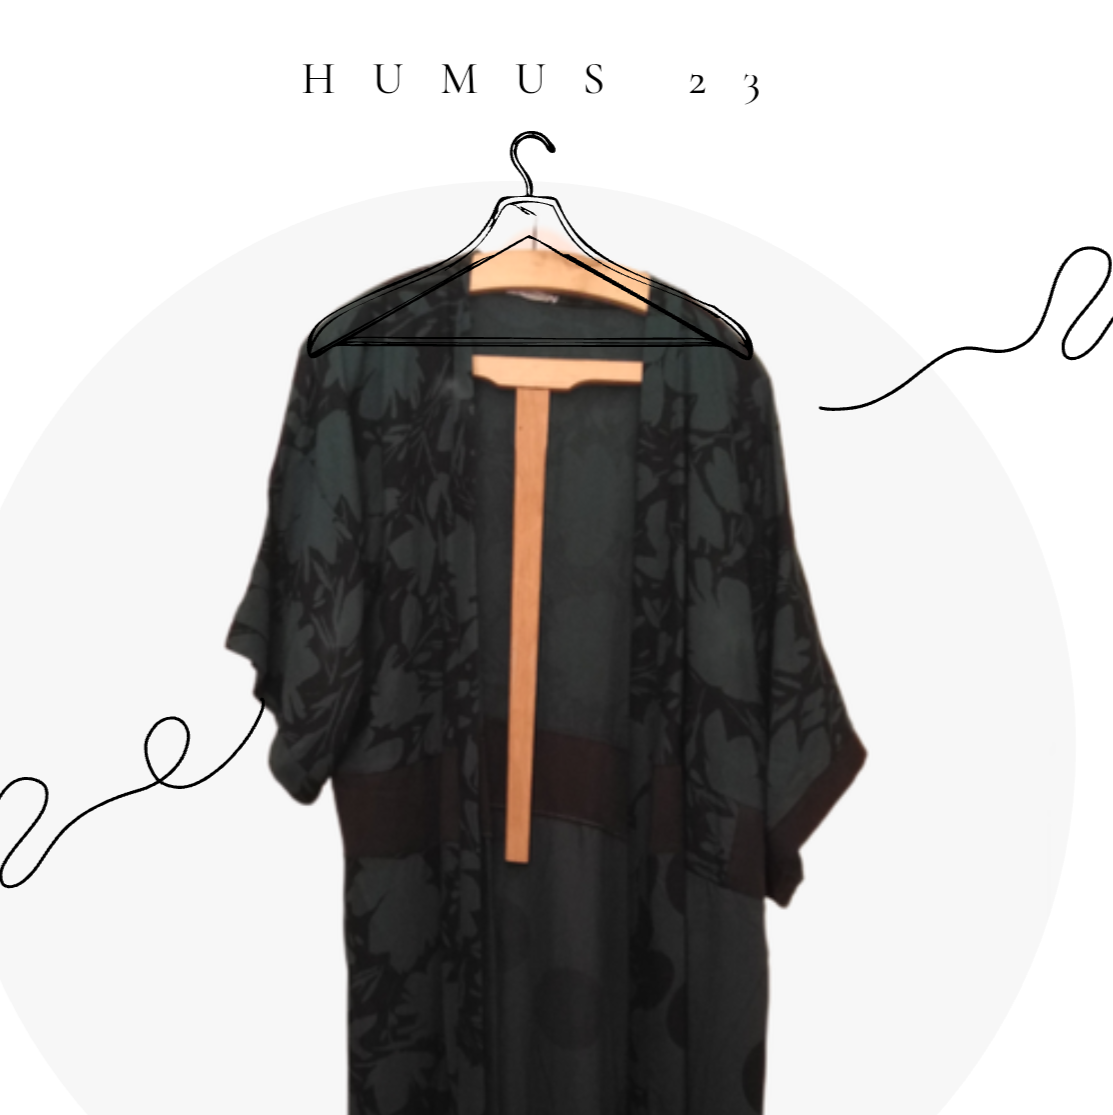 HUMUS 23 kimono lungo in doppia garza di cotone nero, fantasia fiori neri su fondo verde bottiglia, maxi pois neri e sangallo nero. 